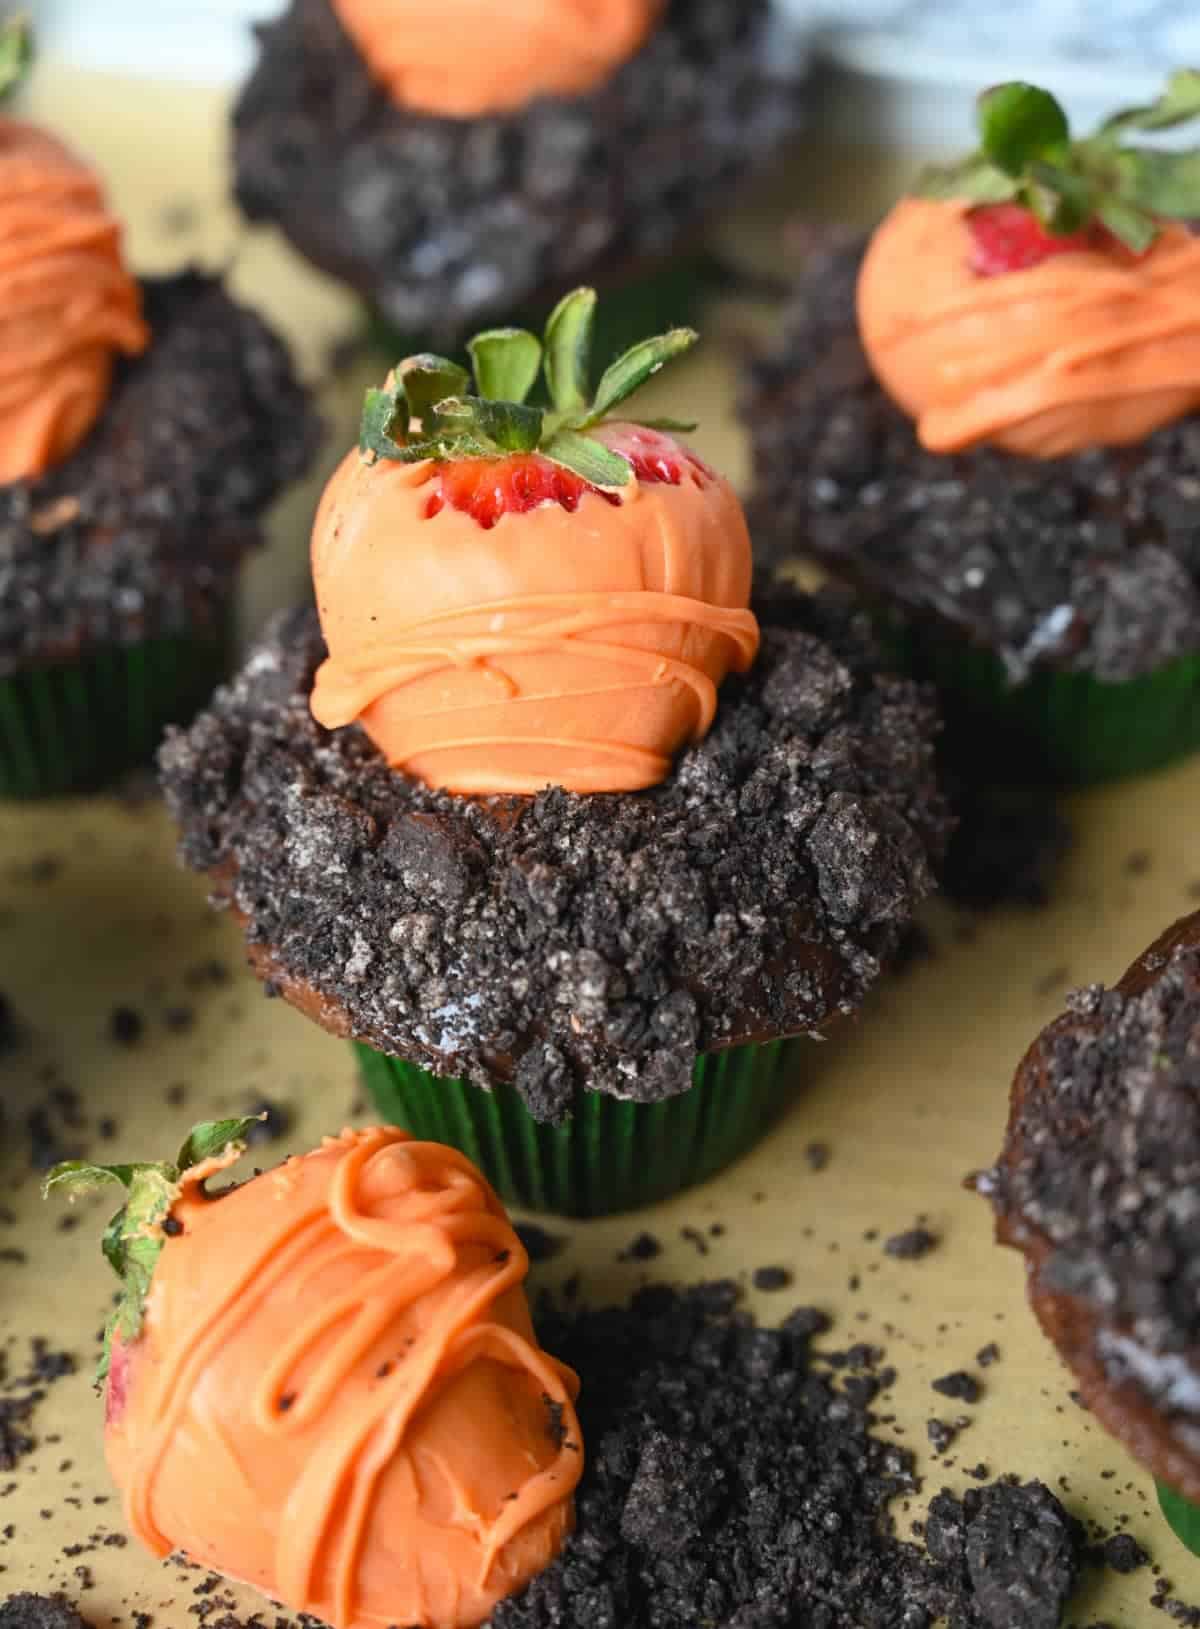 Cinco cupcakes de chocolate con oreo picado encima para que parezca tierra y una fresa cubierta de chocolate encima para que parezca una zanahoria.